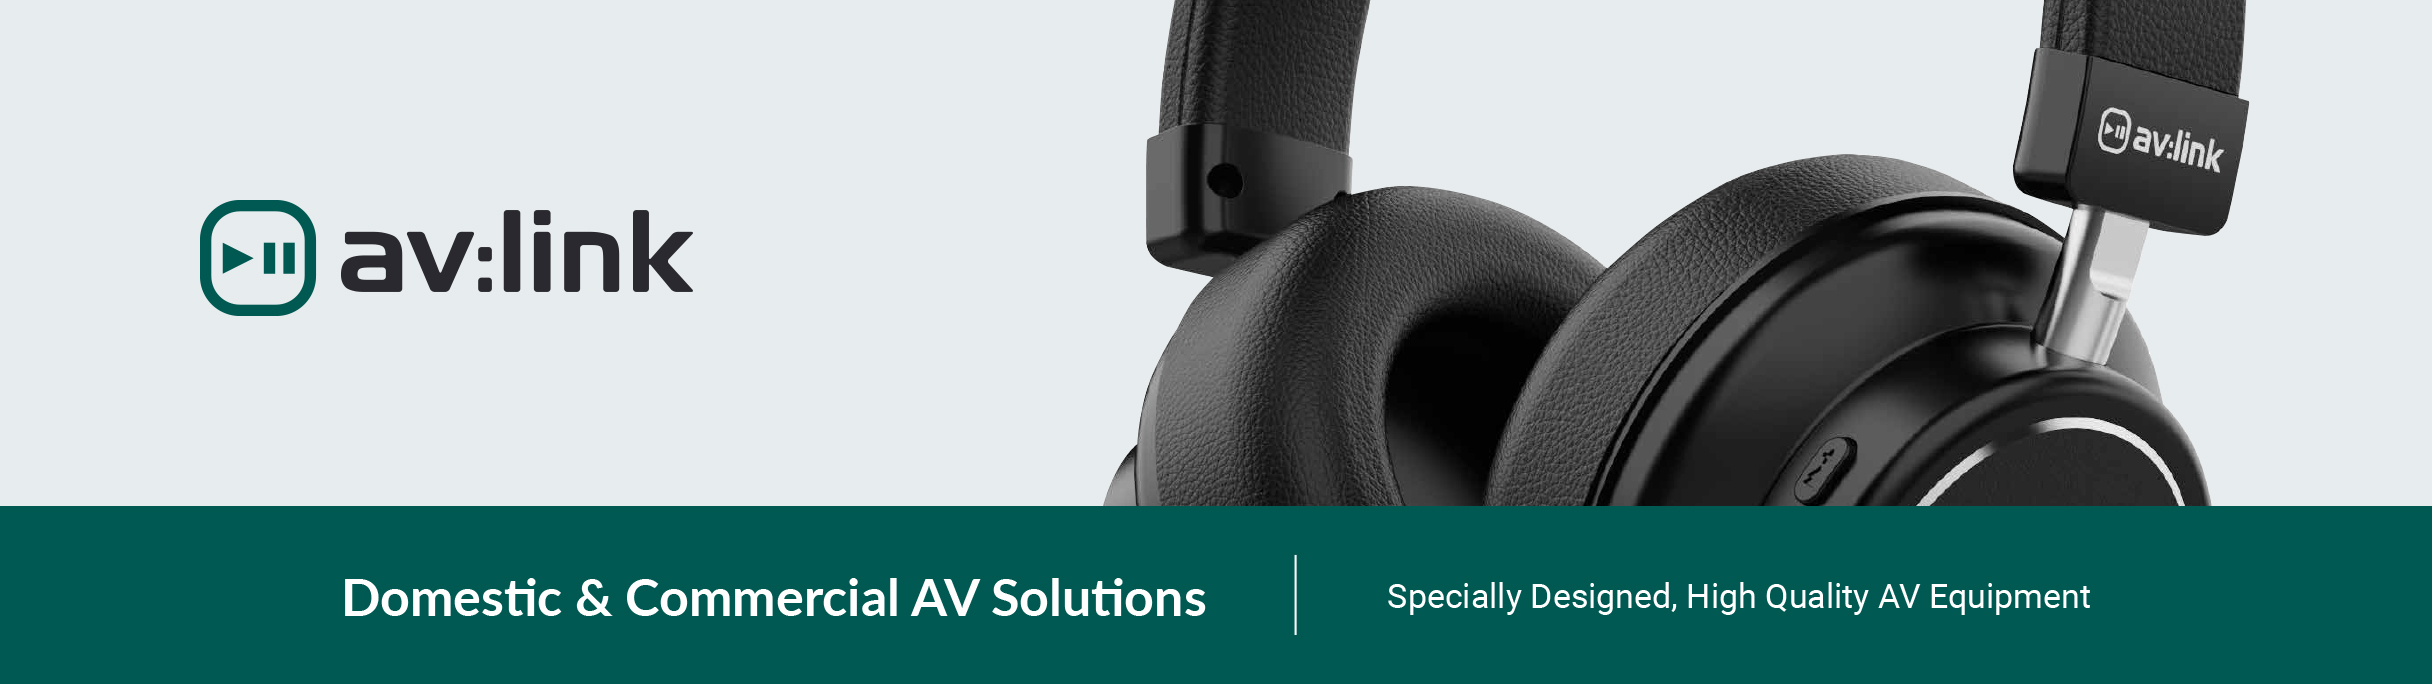 AV:Link - Domestic & Commercial AV Solutions - Specially Designed, High Quality AV Equipment